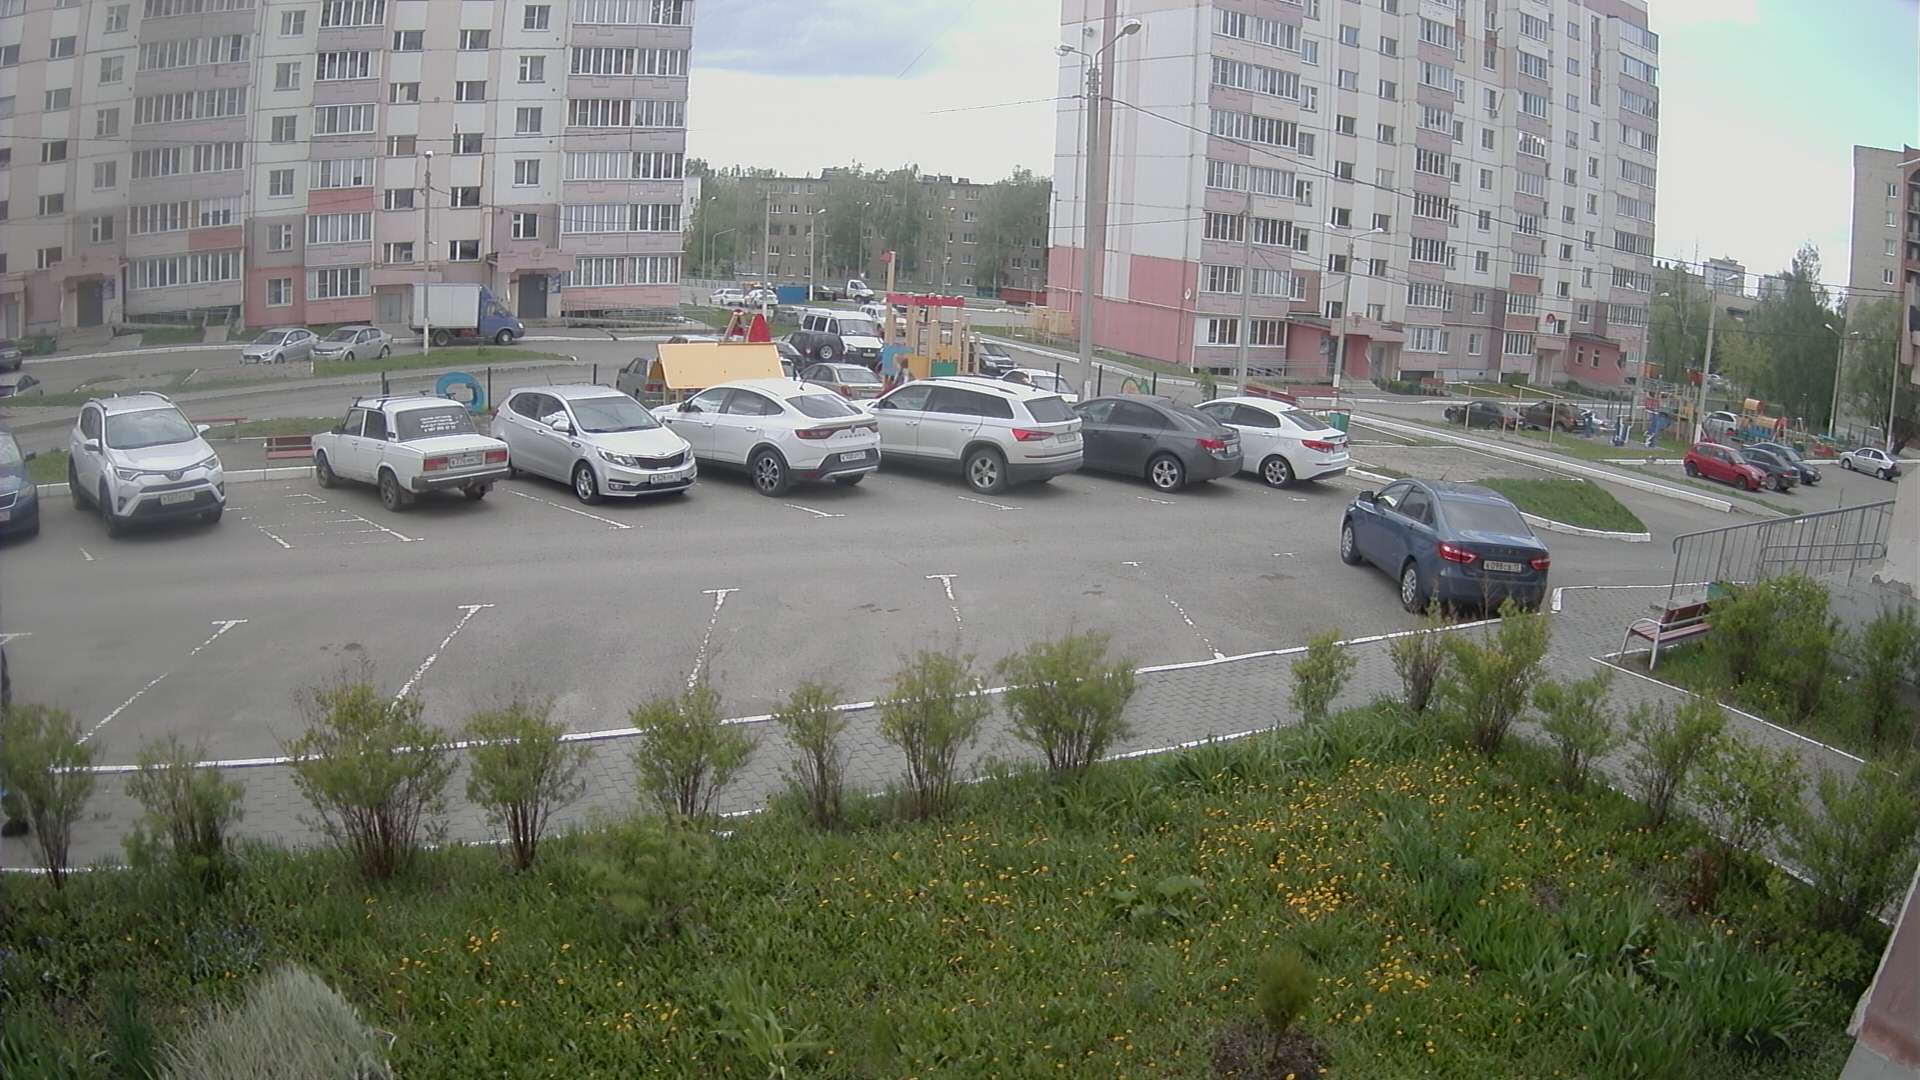 Live camera in Ul'yanovsk